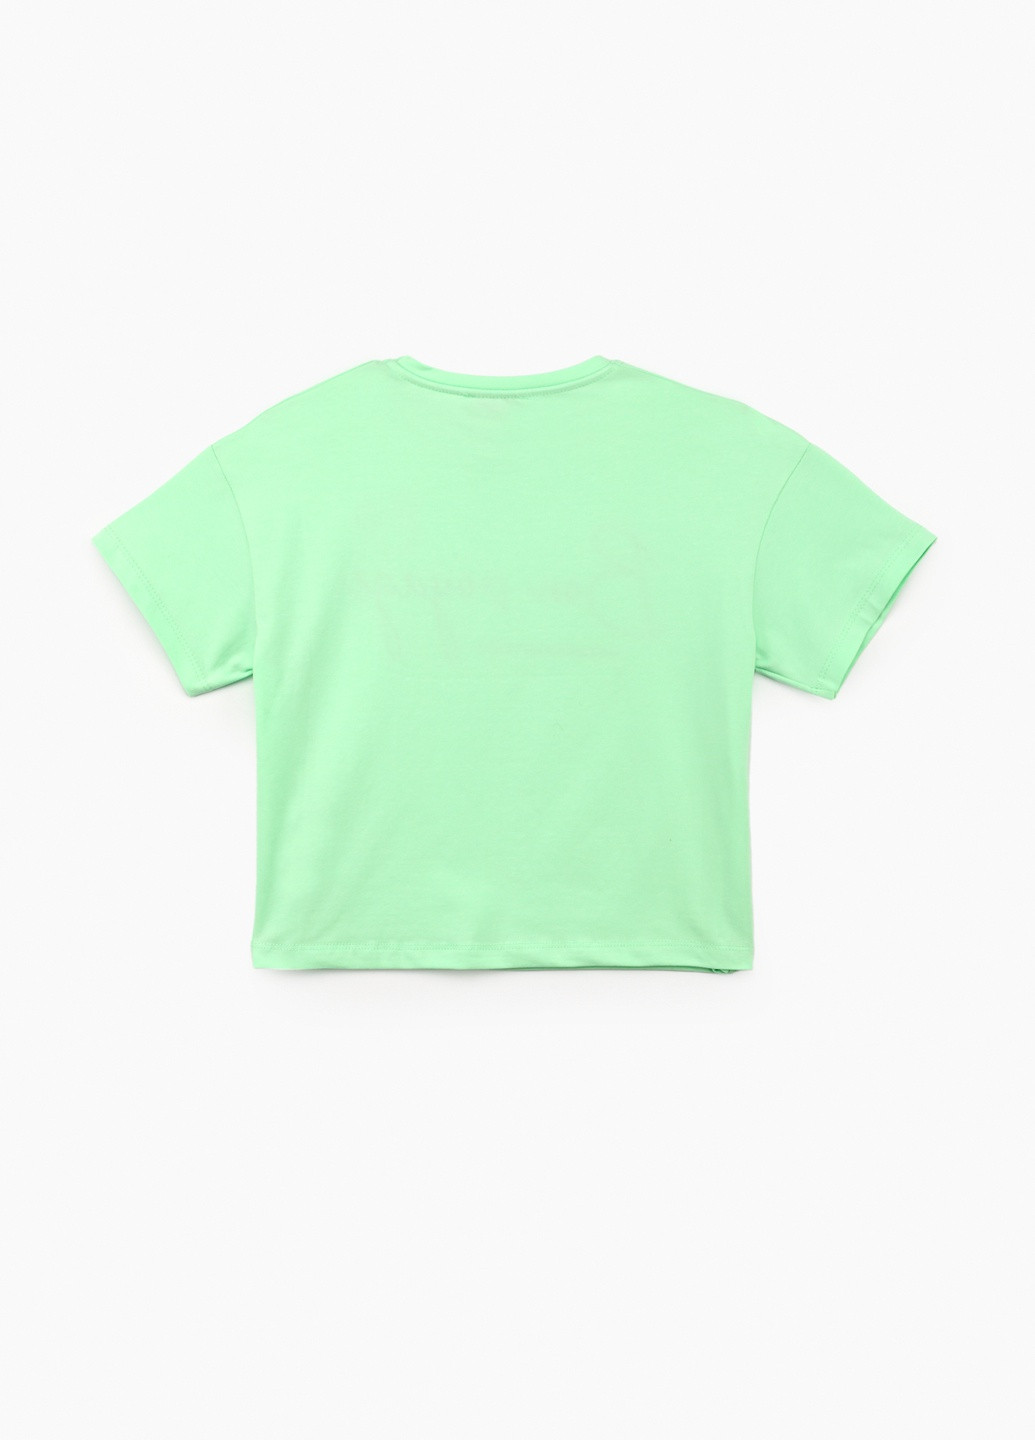 Салатовая летняя футболка Viollen